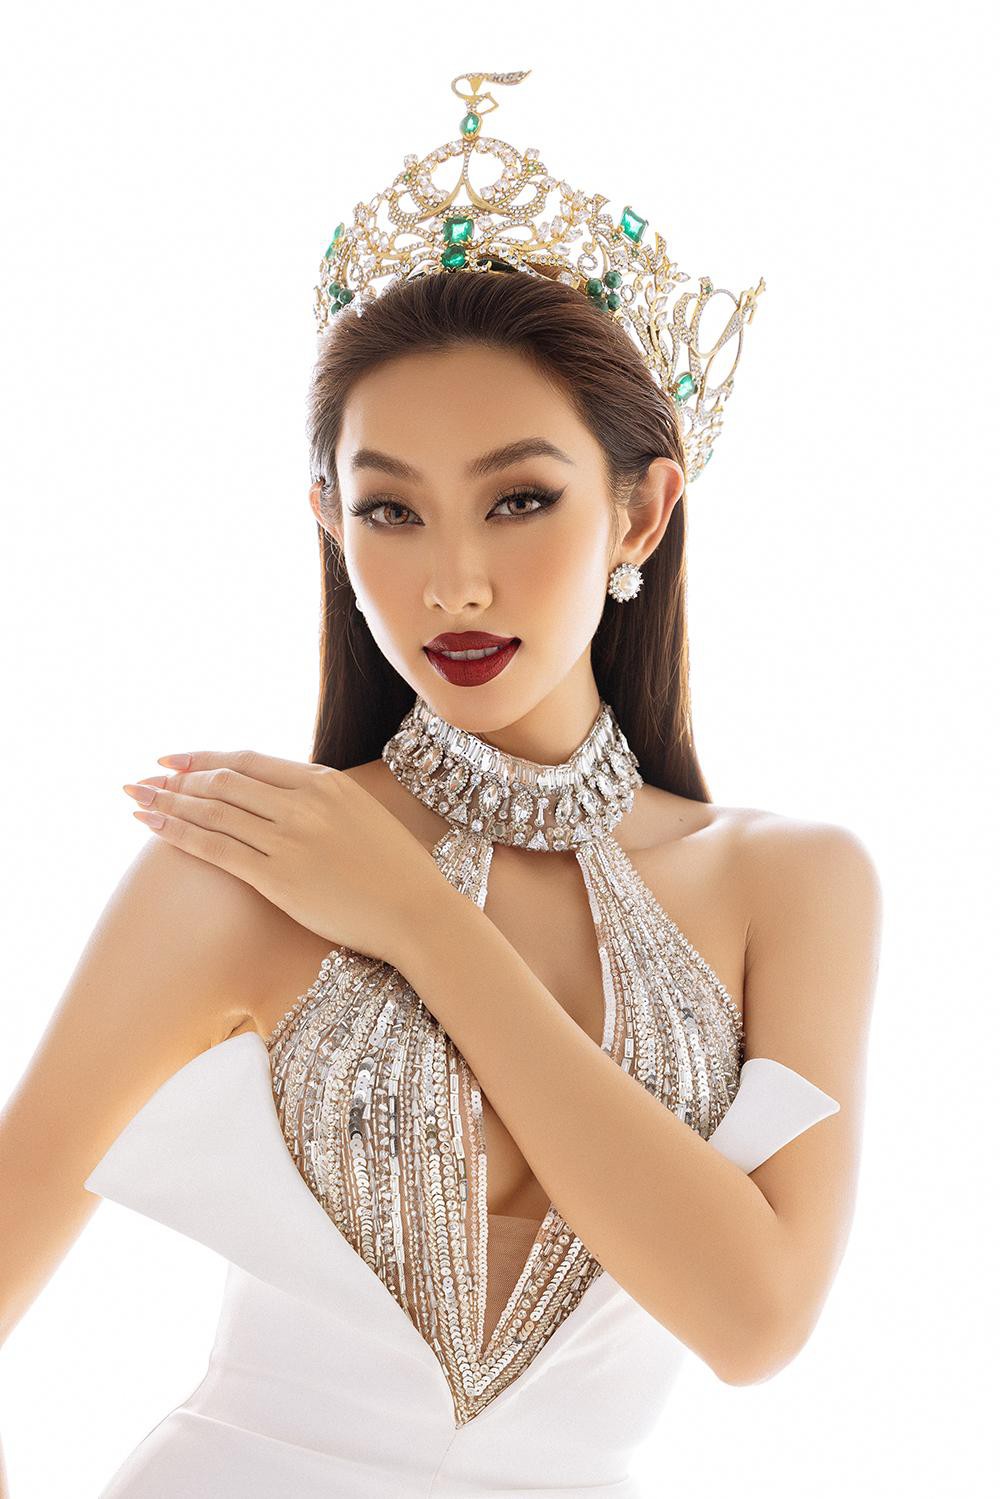 Thuỳ Tiên diện thiết kế khoét vòng 1 nóng bỏng trong bộ ảnh kỷ niệm 6 tháng đăng quang Miss Grand - Ảnh 5.